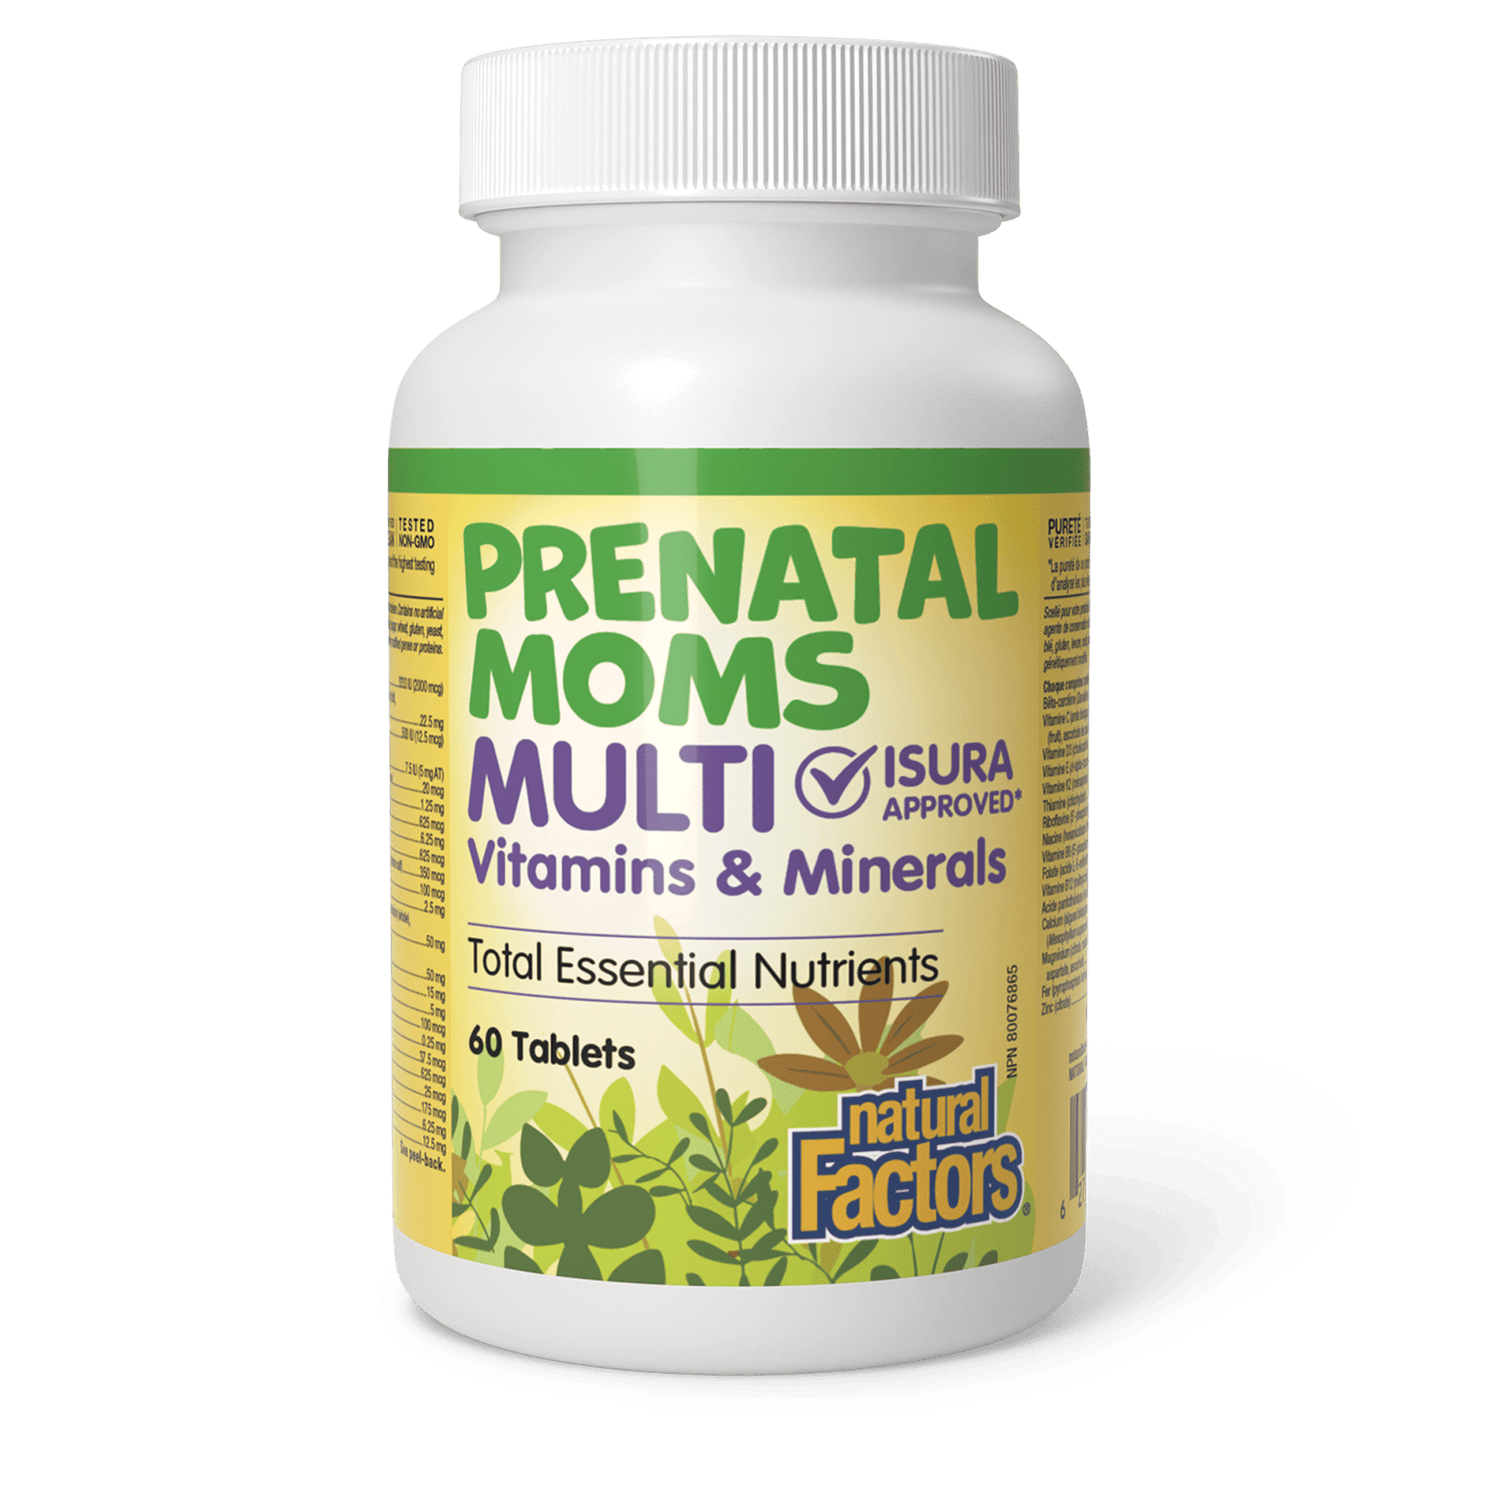 Prenatal Moms Multi Vitamins & Minerals, Big Friends, Natural Factors|v|image|1577